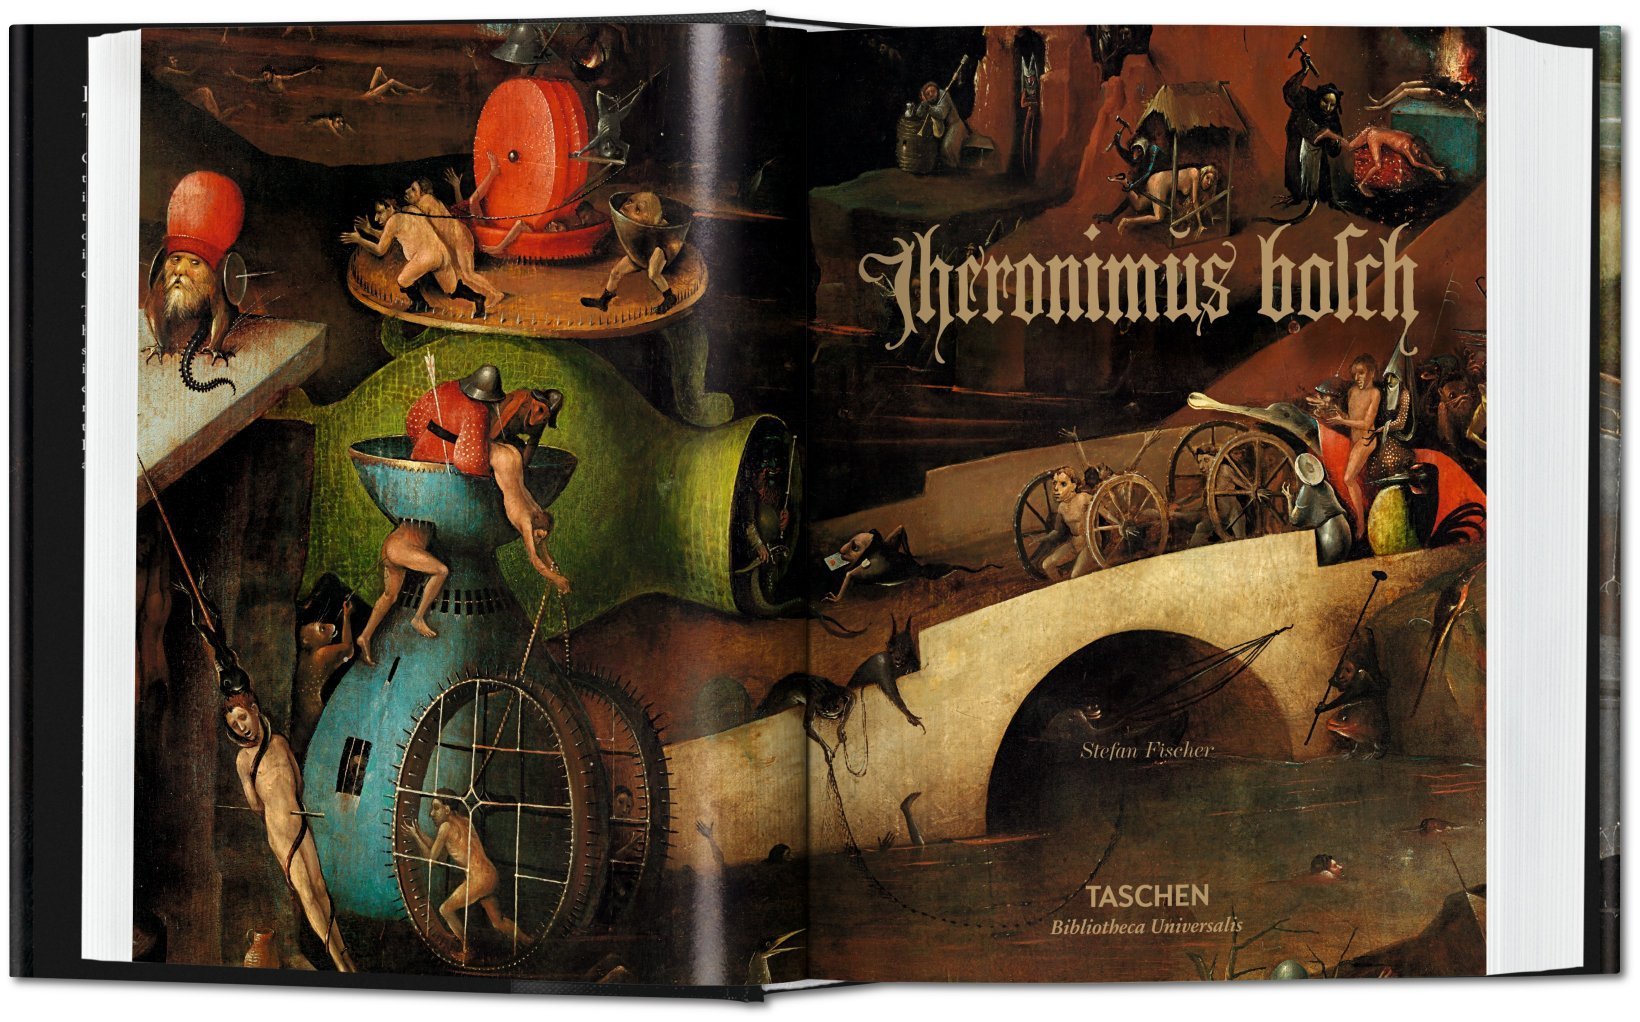 Hieronymus Bosch. Das vollständige Werk | Bibliotheca Universalis